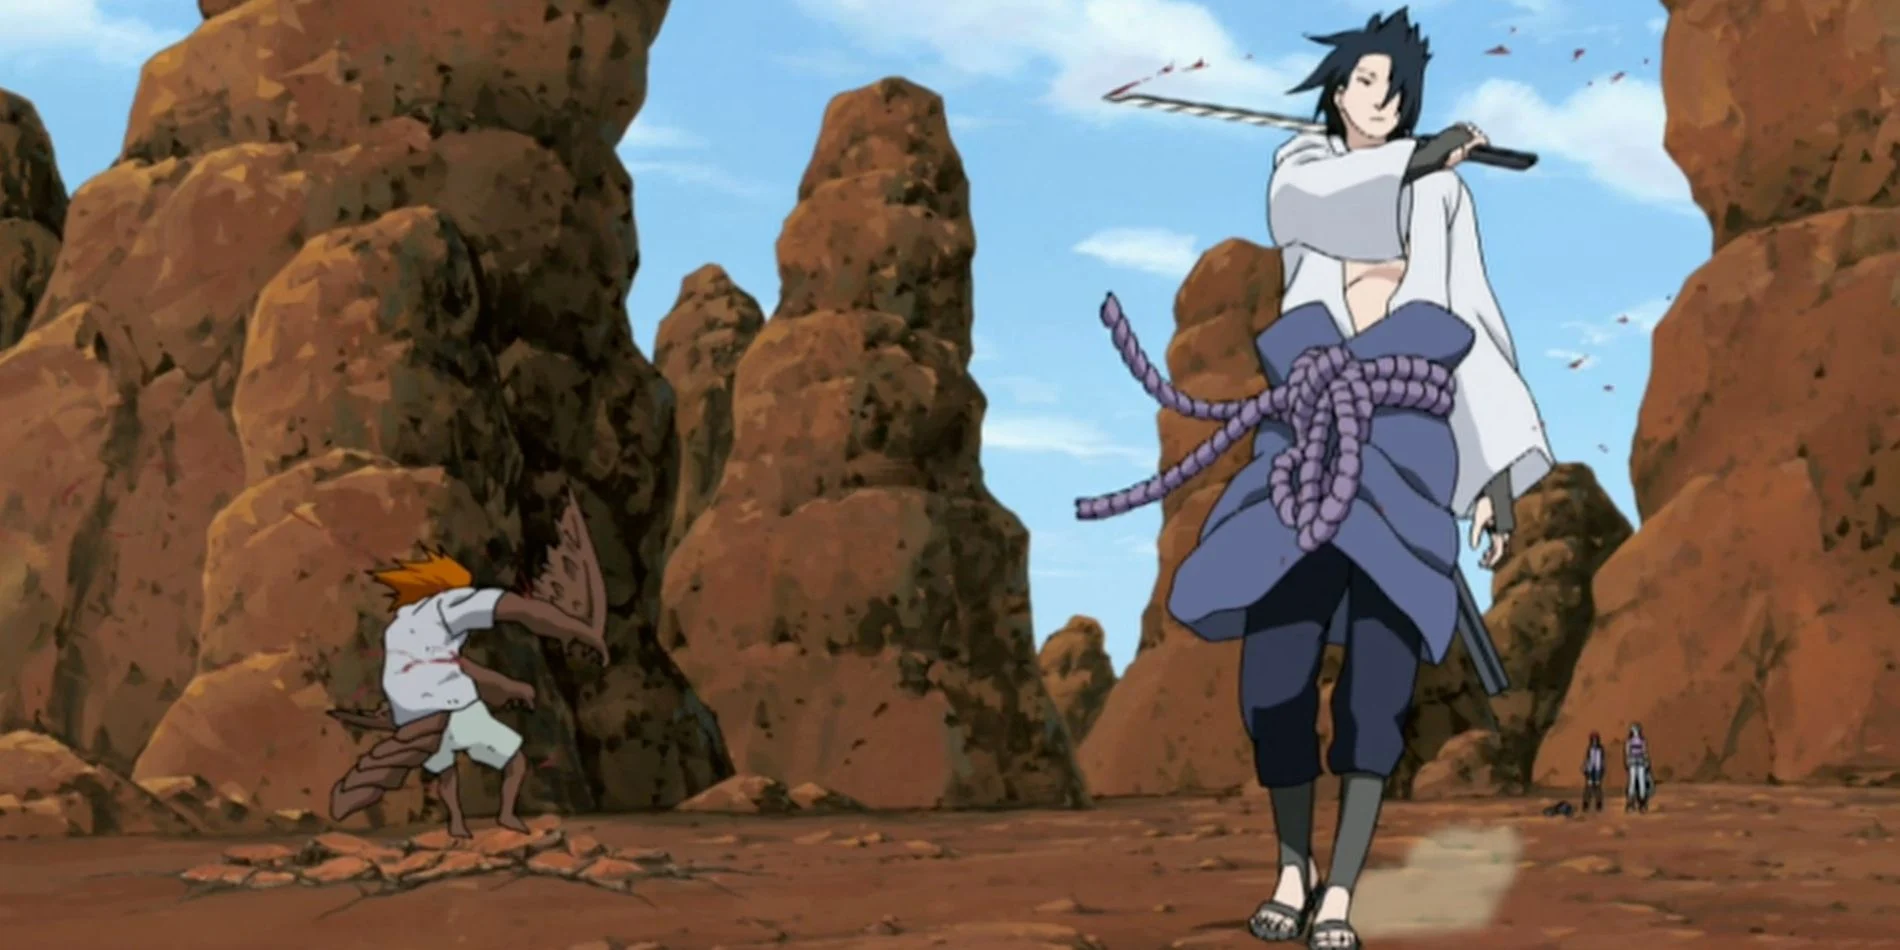 Sasuke venceria Deidara antes de ter absorvido Orochimaru em Naruto?